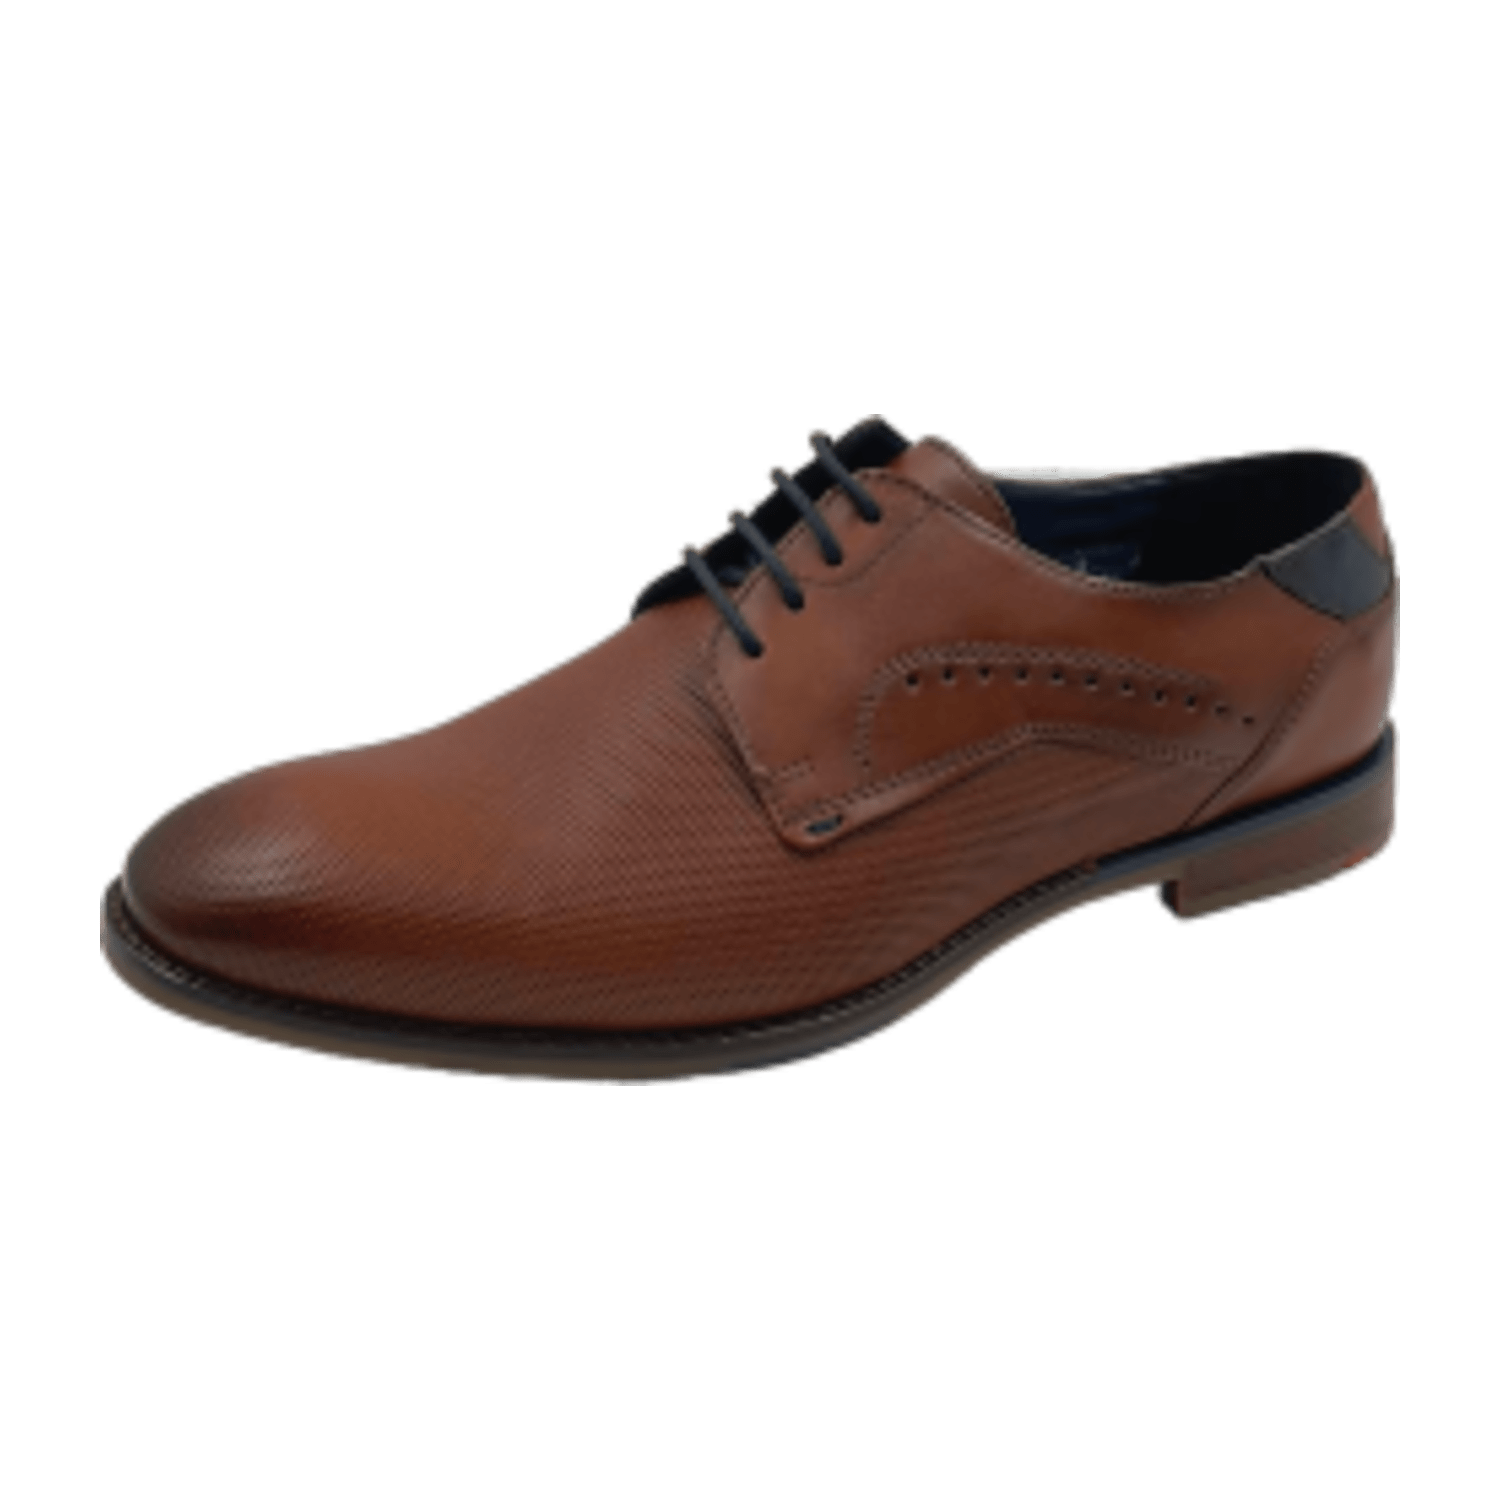 Lloyd Namir Business Schuhe braun perforiert 13-076-03